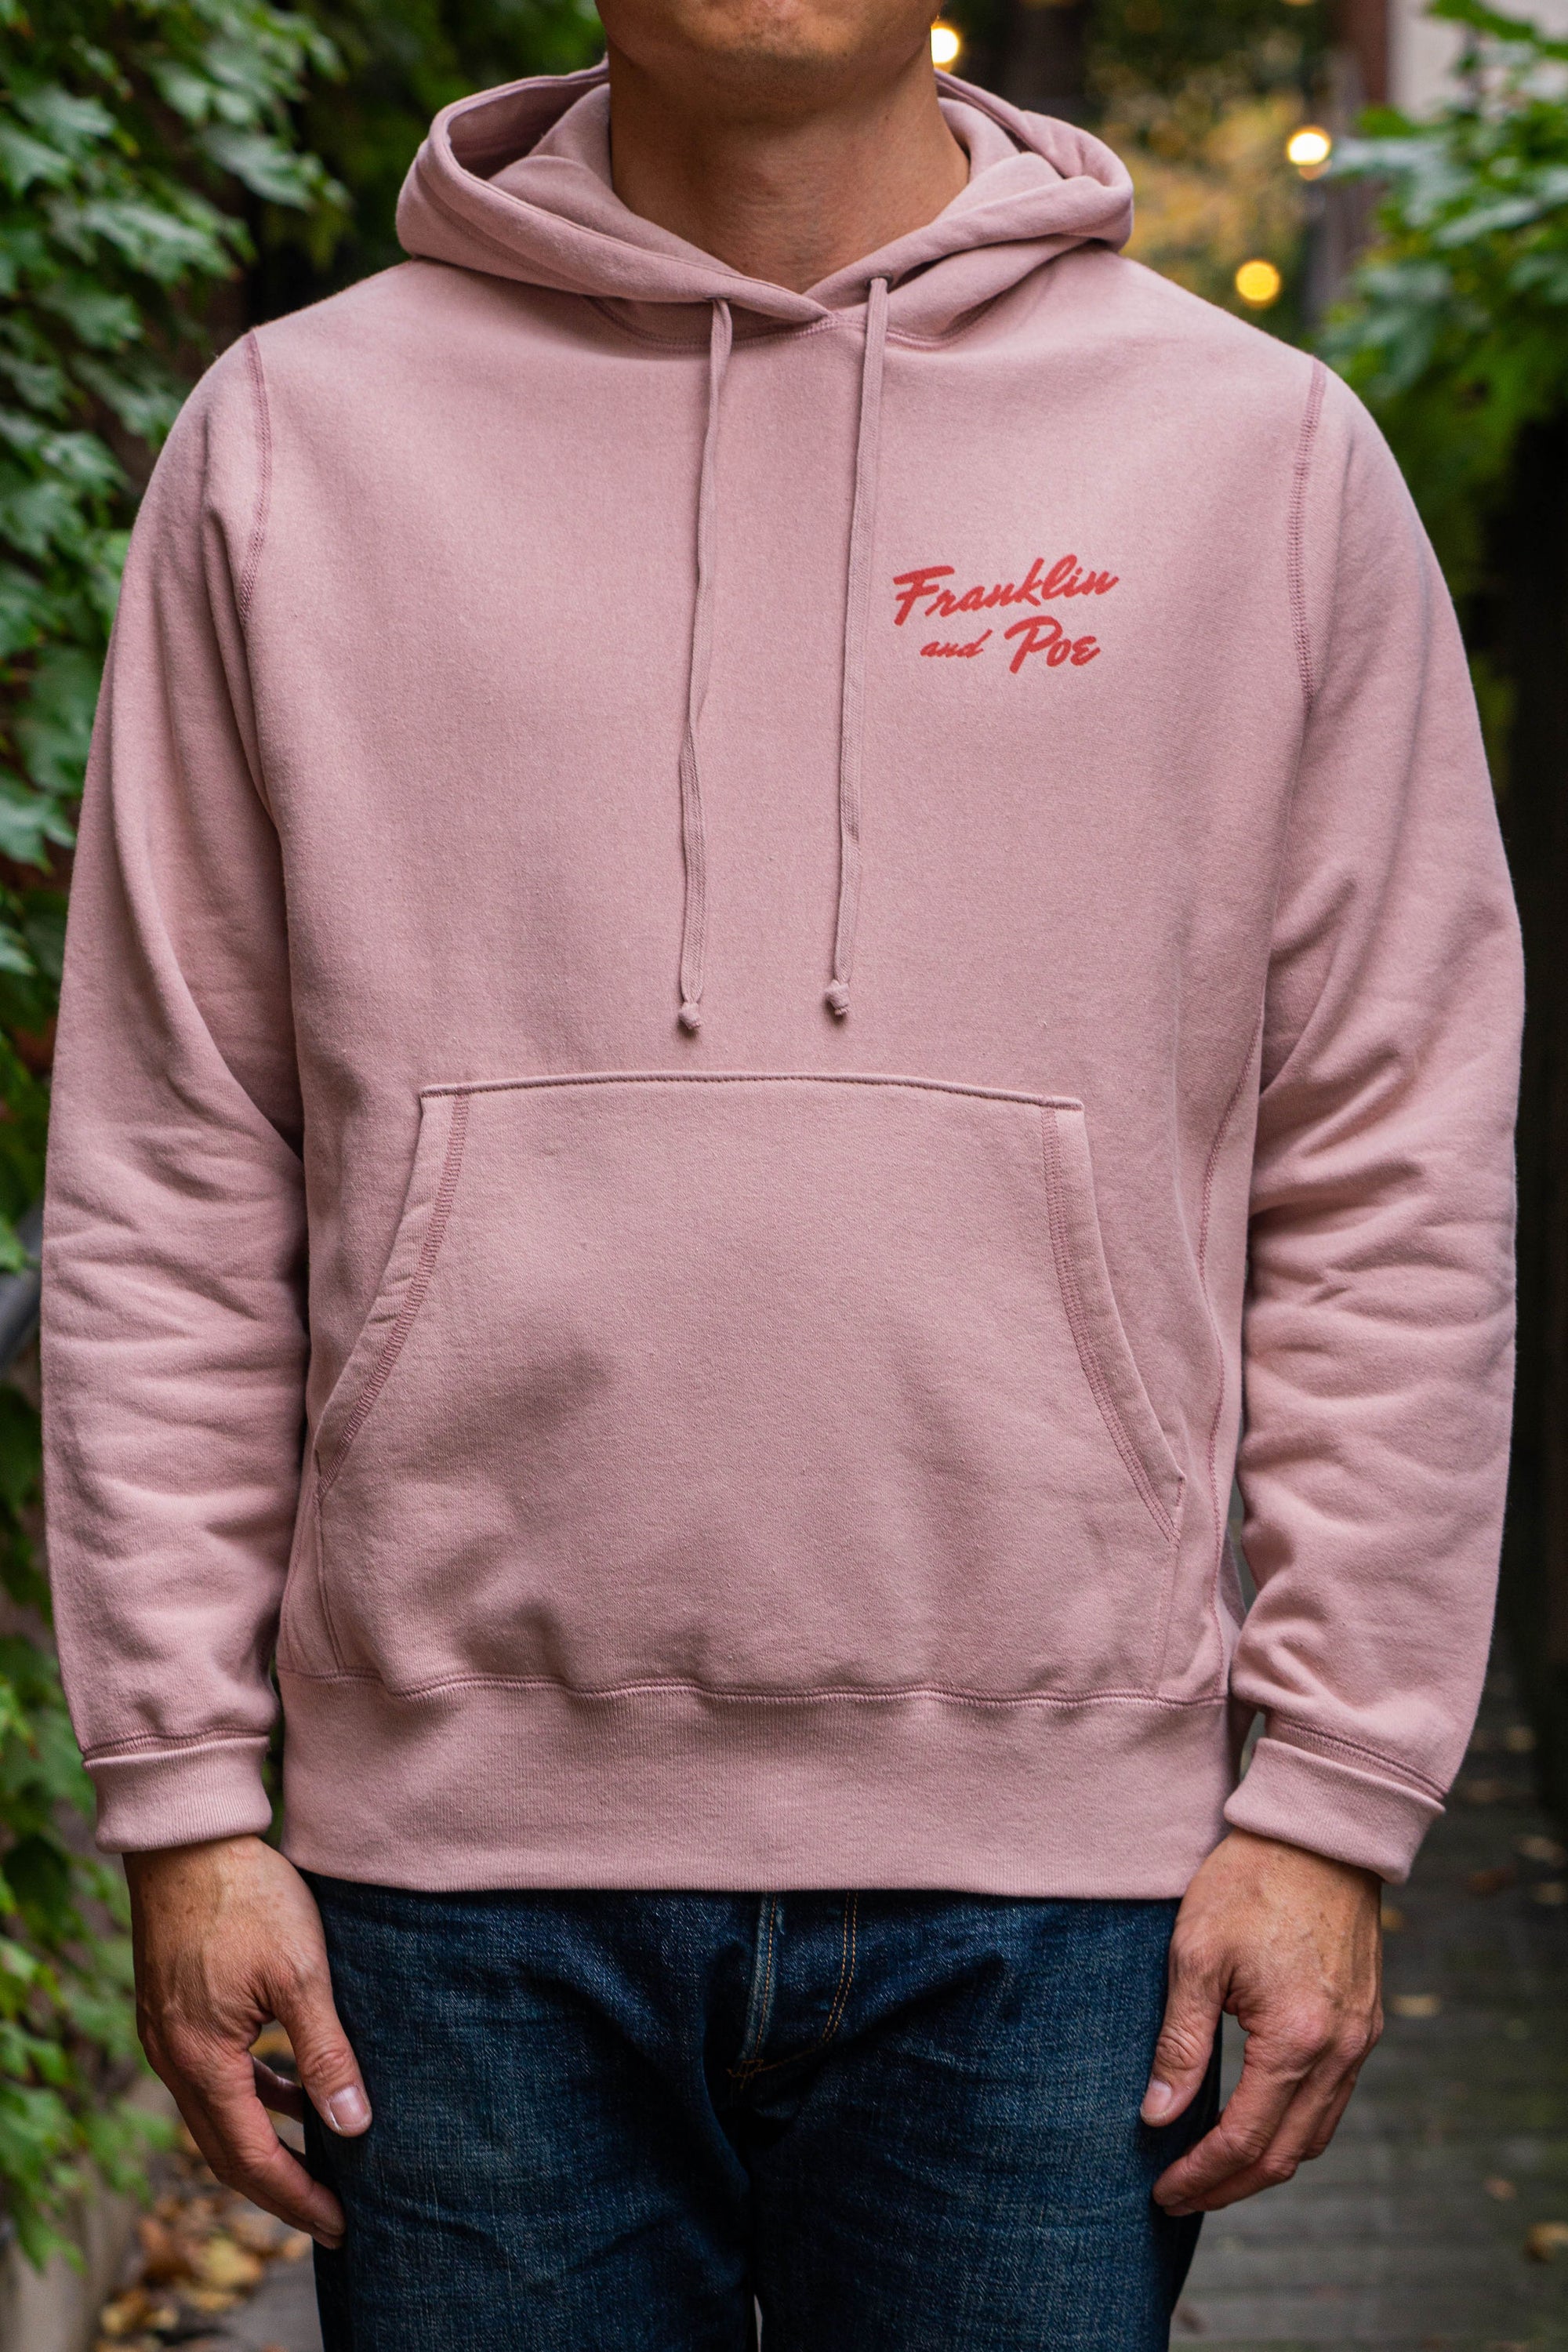 Franklin & Poe Shop Hoody - Pink Bronco Edition